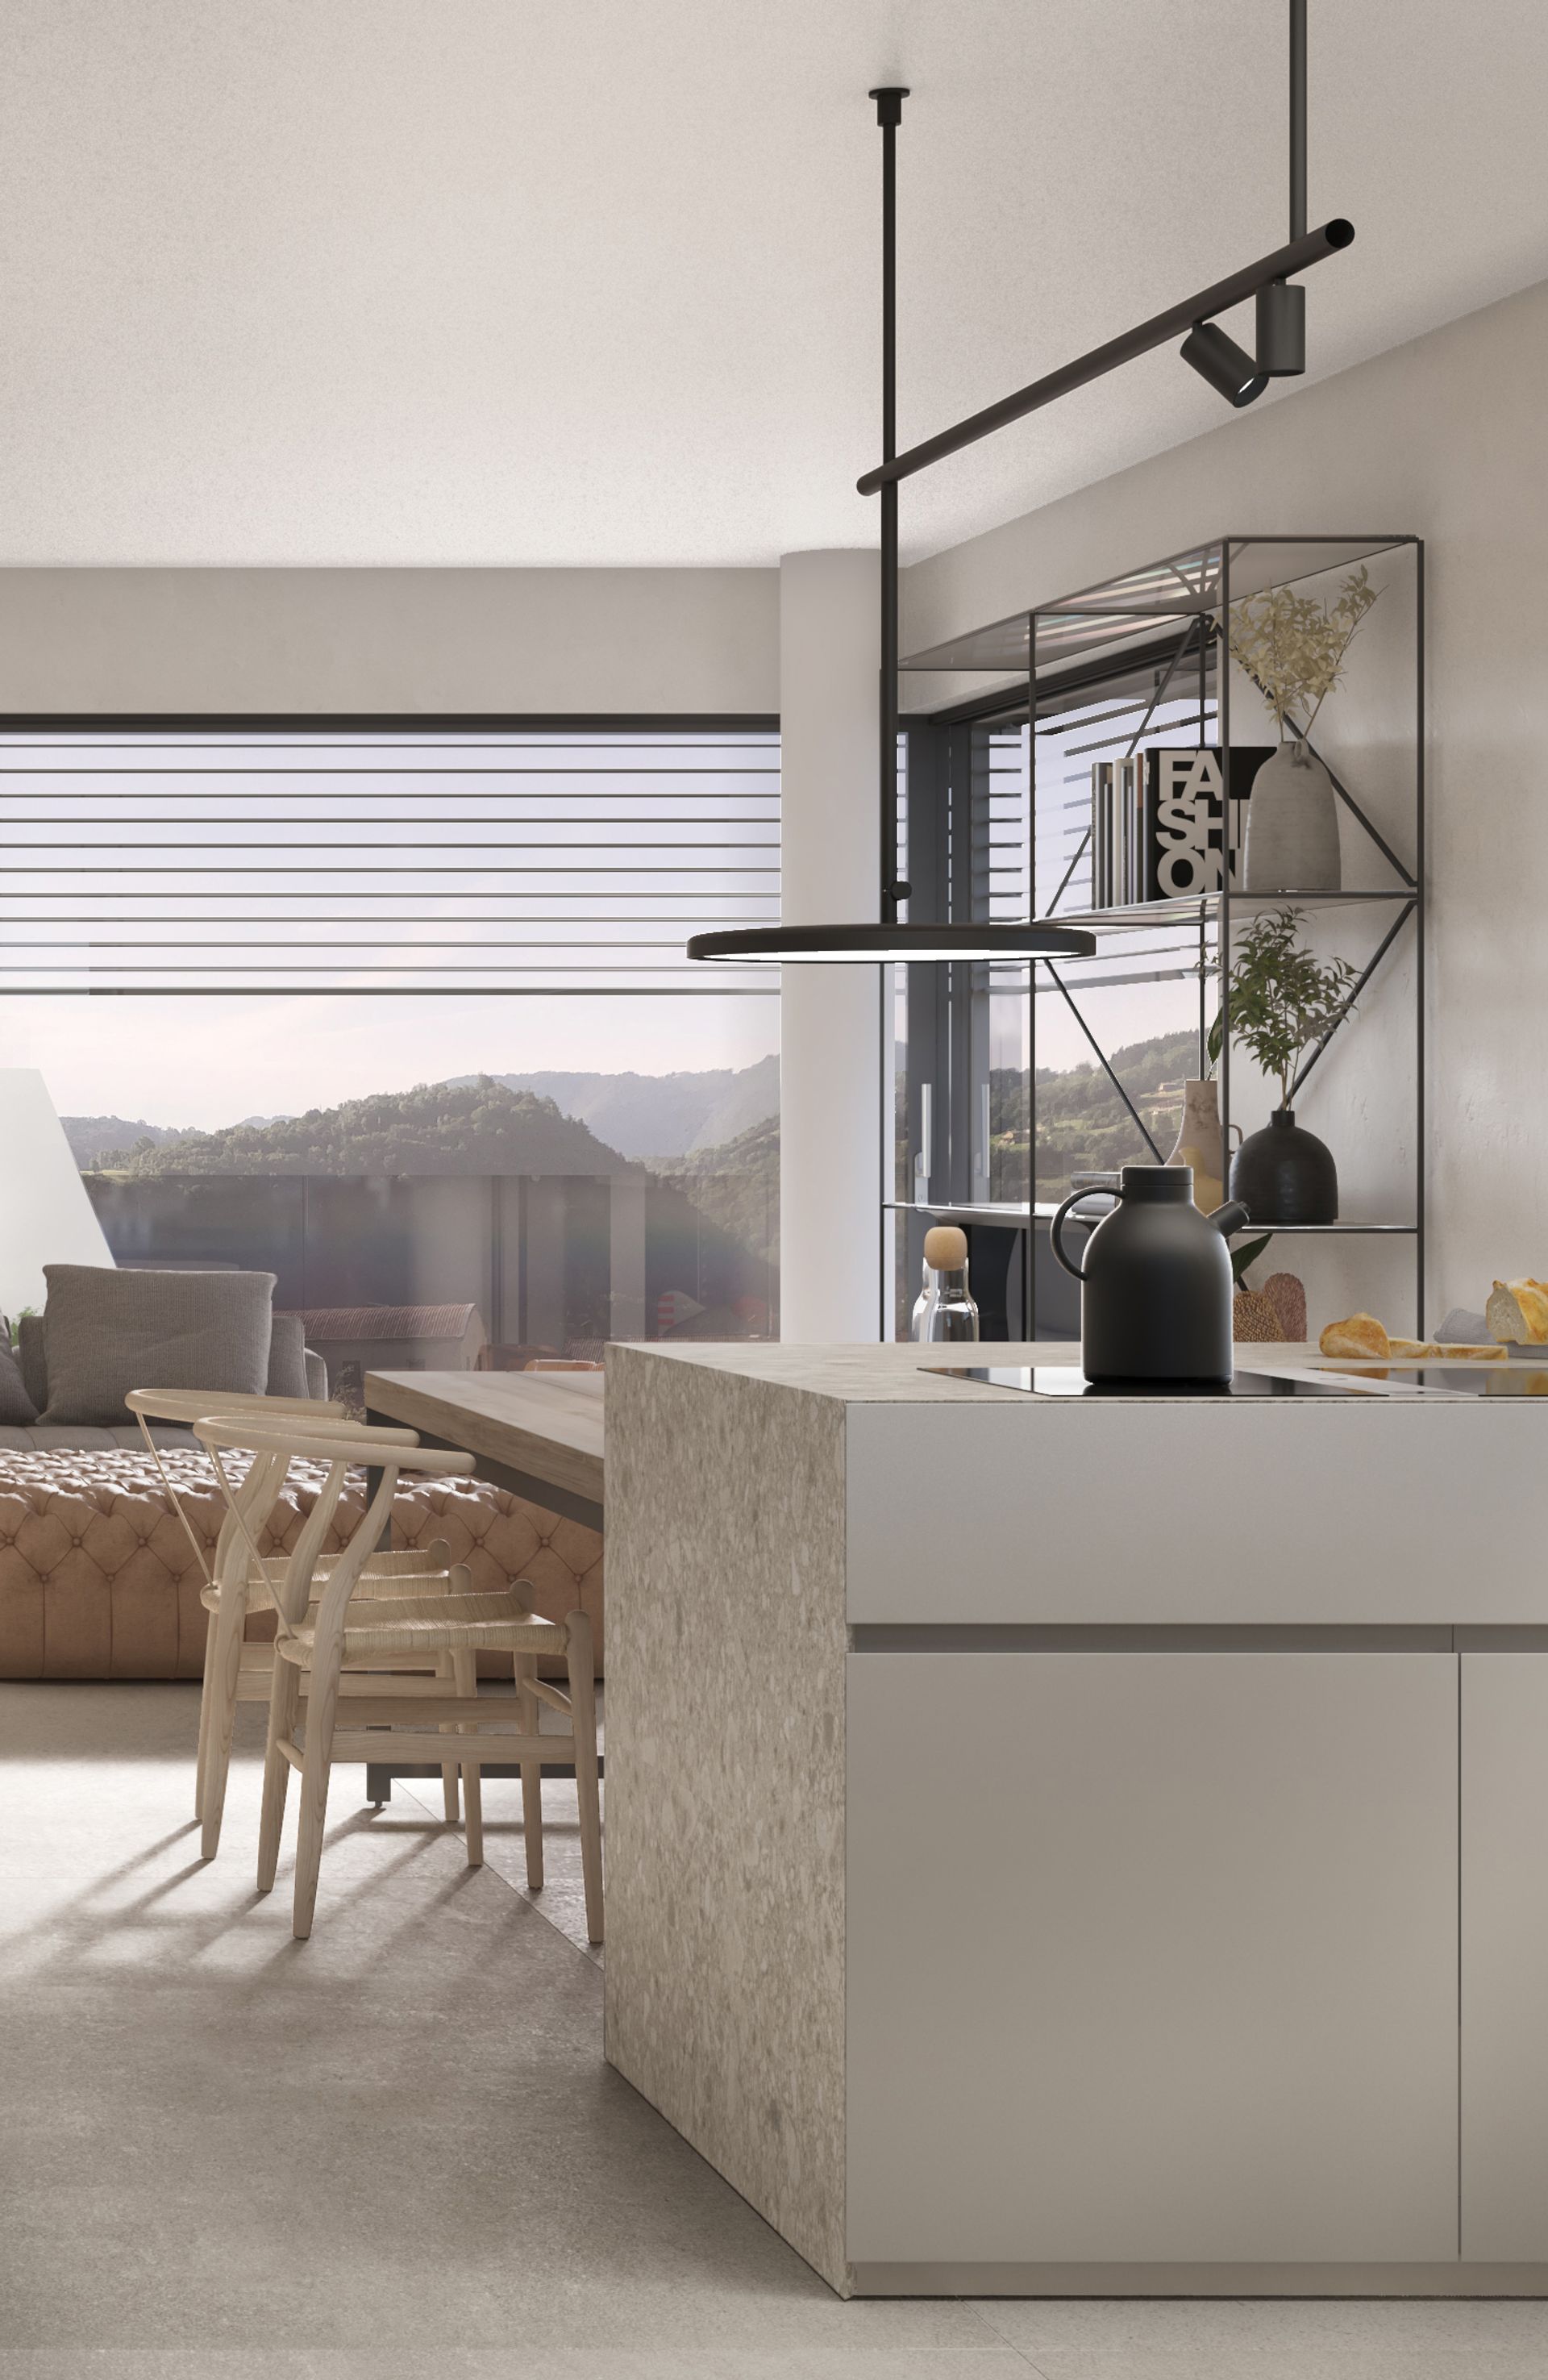 New apartment project, single-family house, convivium kitchen block, Ceppo di Grè. Officina Magisafi architecture design - kitchen detail rendering